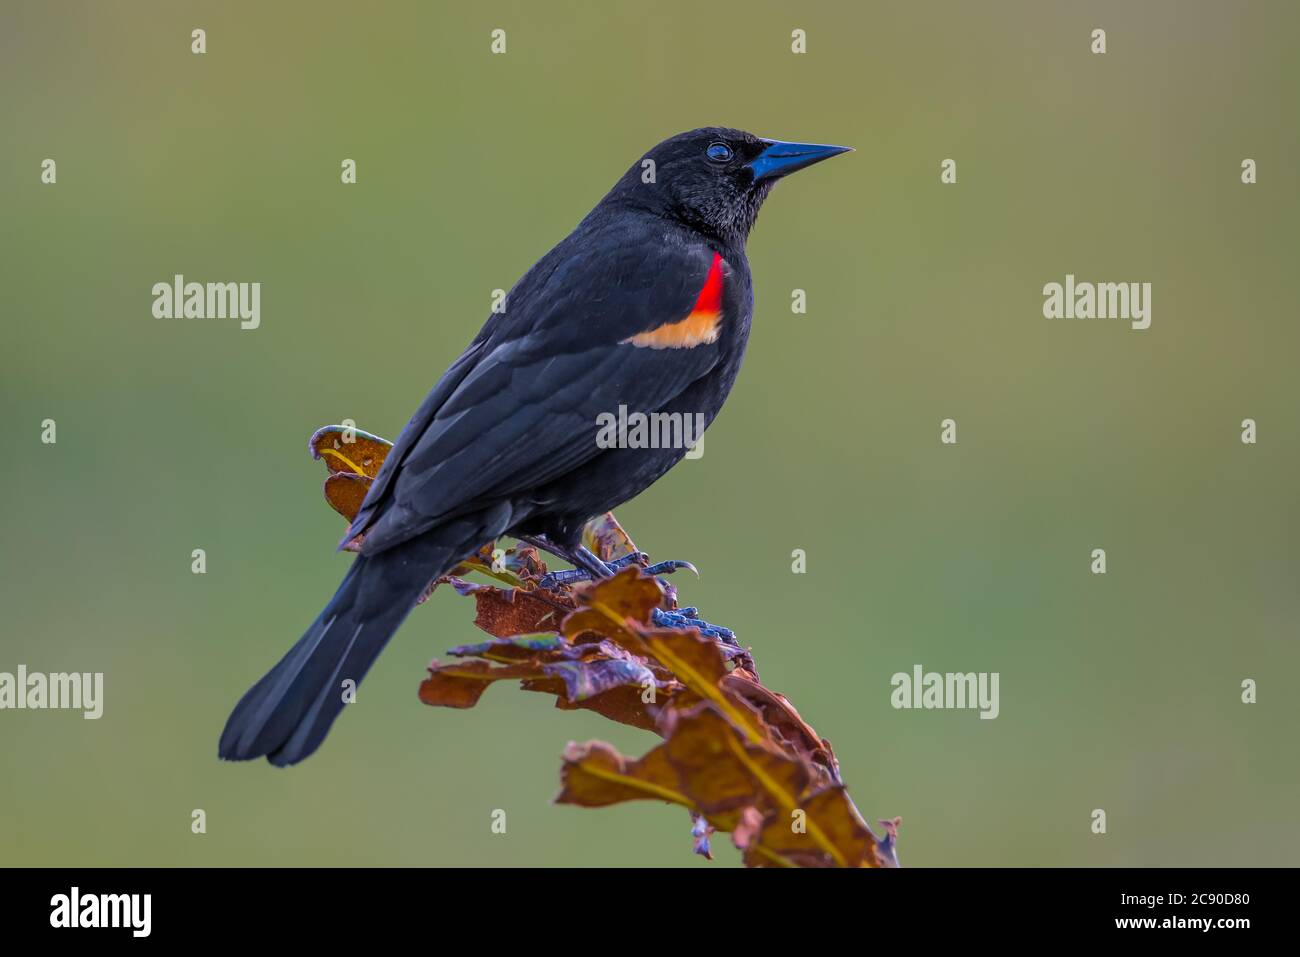 Maschio Blackbird alato rosso arcuato su una foglia Foto Stock